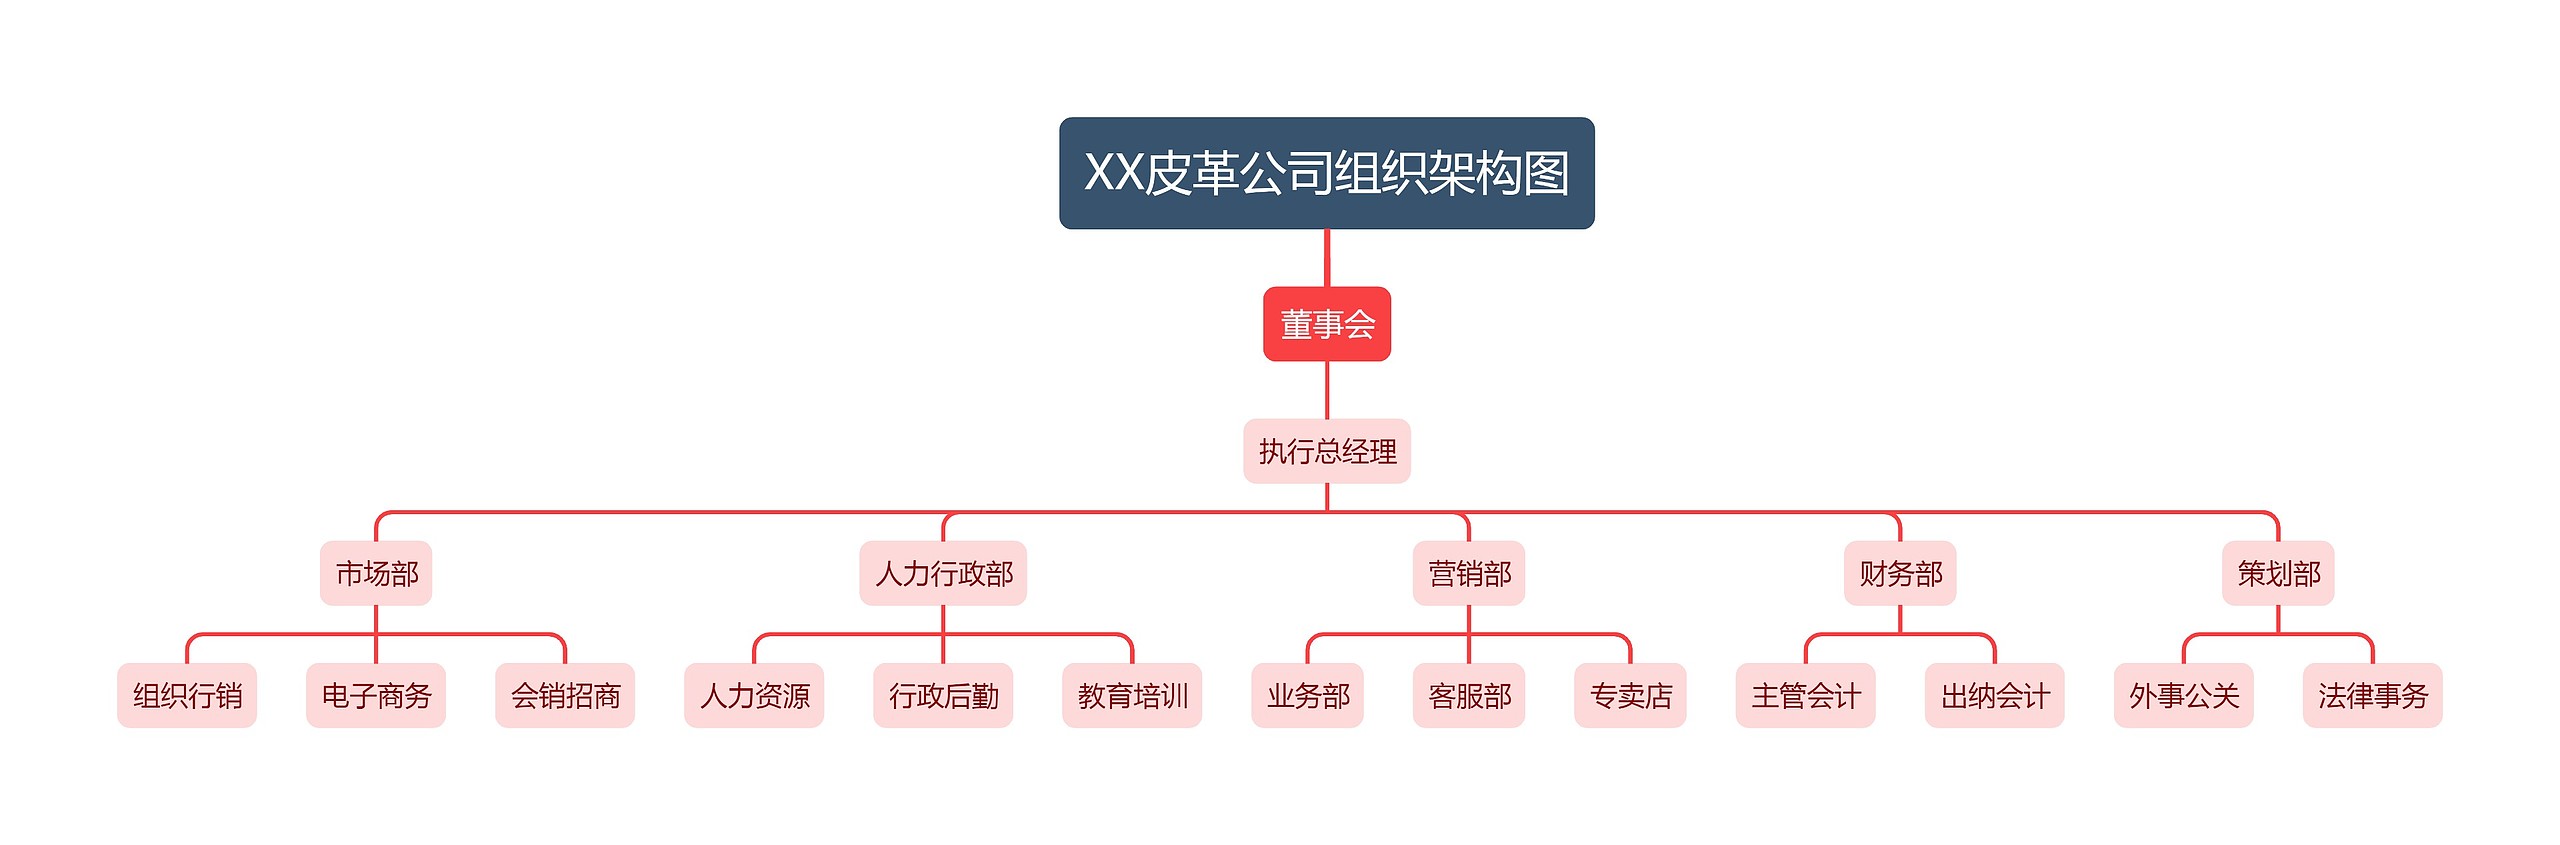 XX皮革公司组织架构图